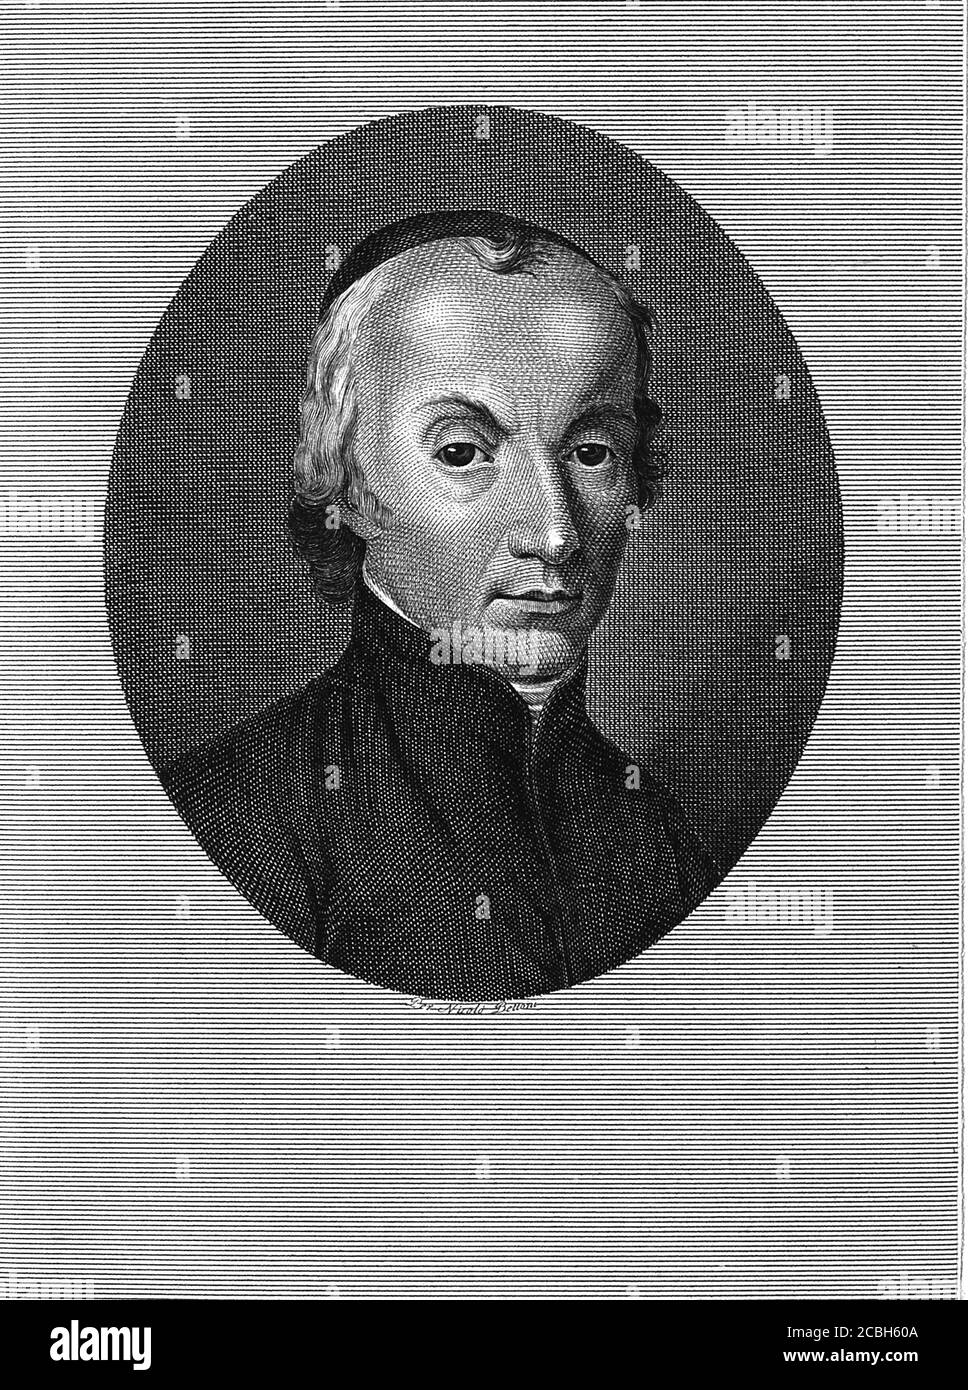 1820 c, ITALIEN : der berühmte italienische Priester und Astronom GIUSEPPE PIAZZI ( 1746 - 1826 ). Entdecken Sie Cerere (Ceres, der Zwergplanet) im Jahr 1801. Porträt gestochen von N. Bettoni . - SCIENZA - ritratto - Portrait - prete - Priester - SCIENZIATO - SCIENZA - WISSENSCHAFT - WISSENSCHAFTLER - GESCHICHTE - foto storiche - ASTRONOMIA - ASTRONOMIE - ASTRONOM - ASTRONOMO - Illustration - Illustration - Gravur - incisione - KATHOLISCHE RELIGION - RELIGIONE CATTOLICA --- ARCHIVIO GBB Stockfoto